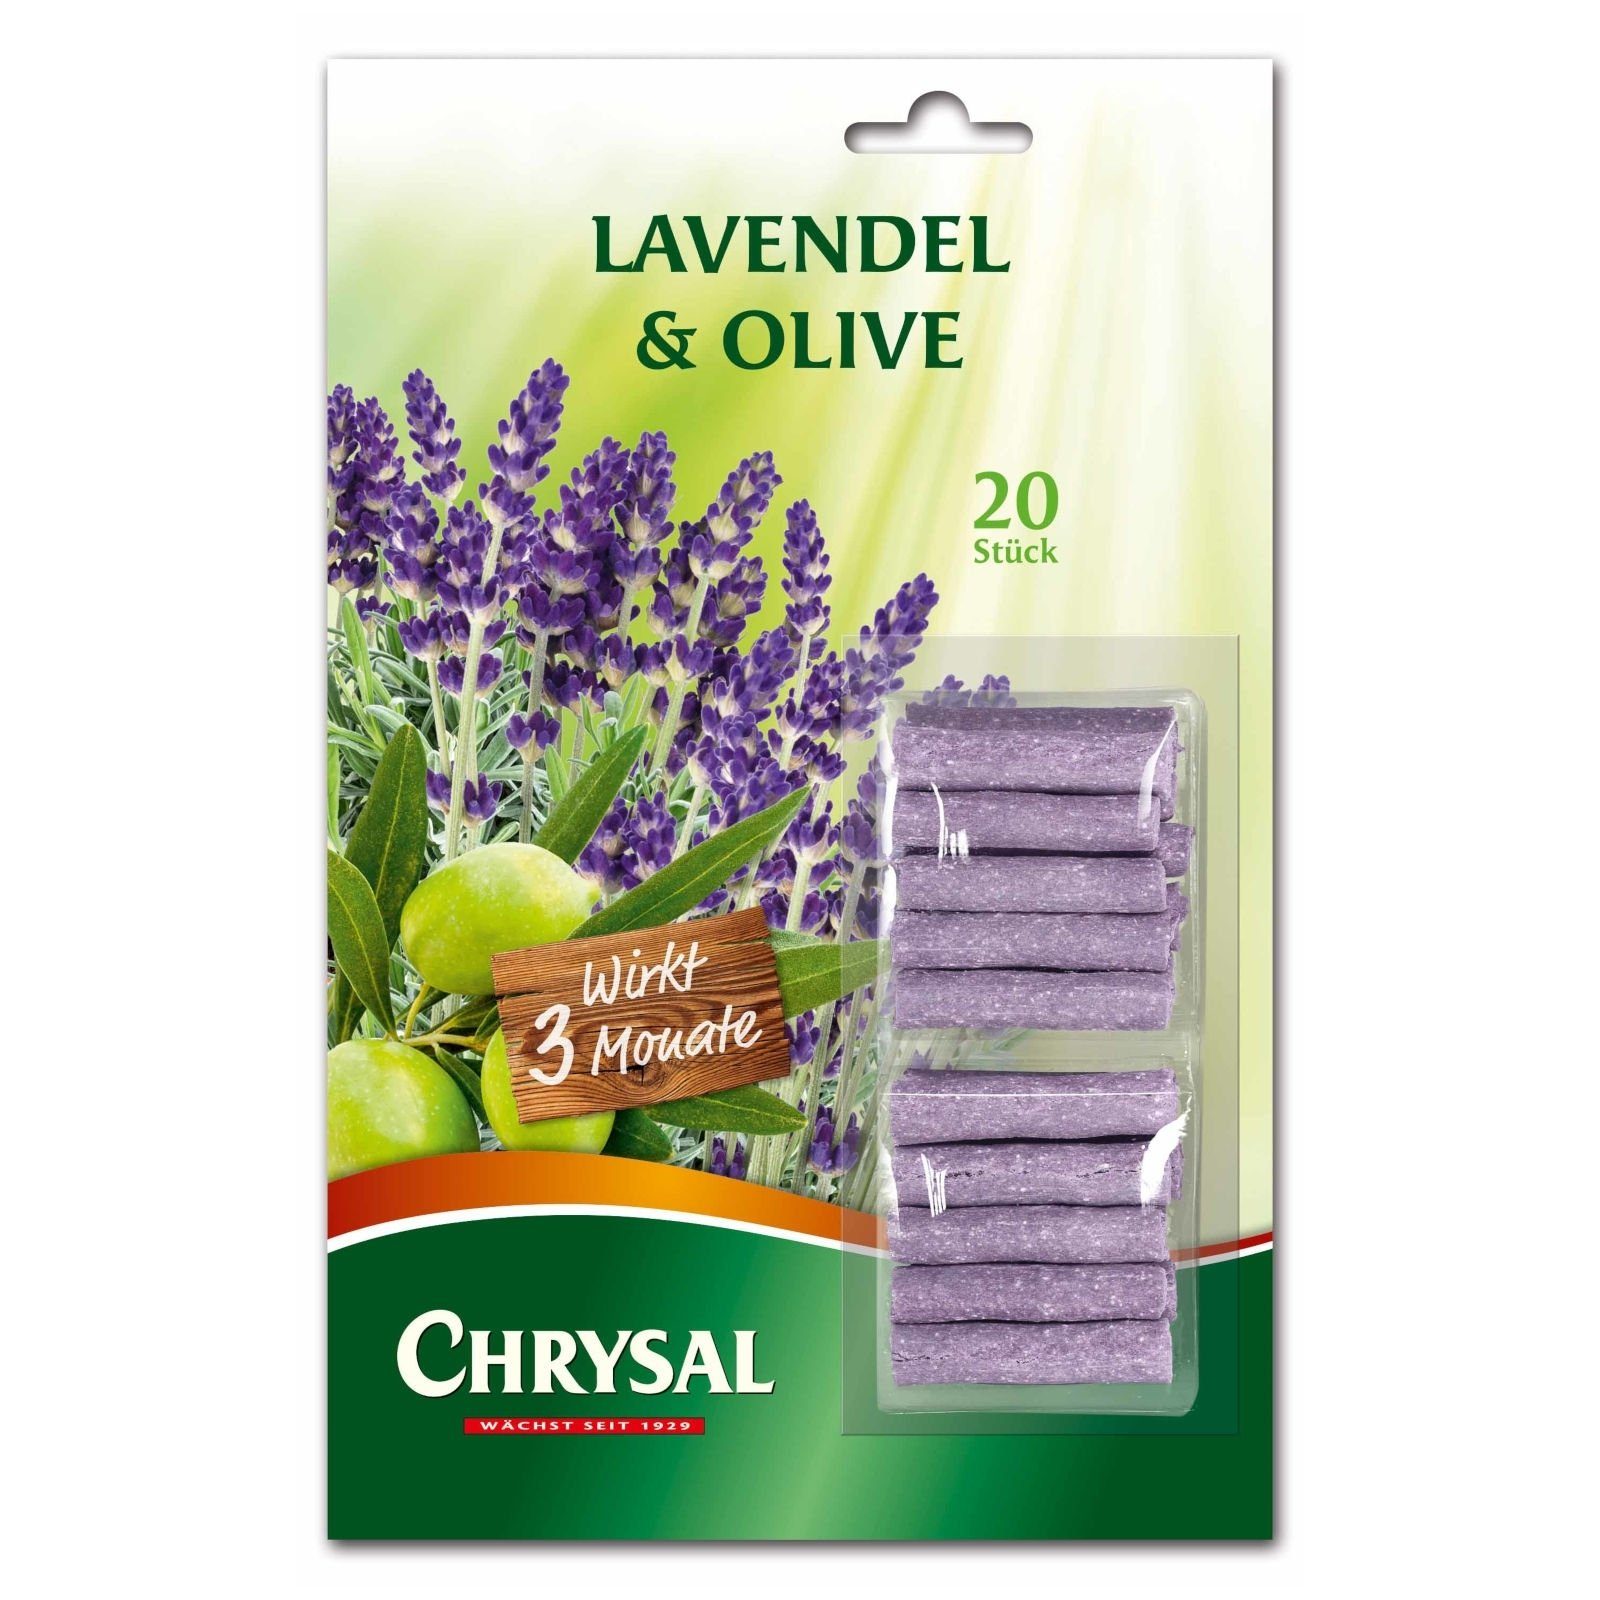 Chrysal Pflanzendünger Lavendel & Olive Düngestäbchen - 20 Stück